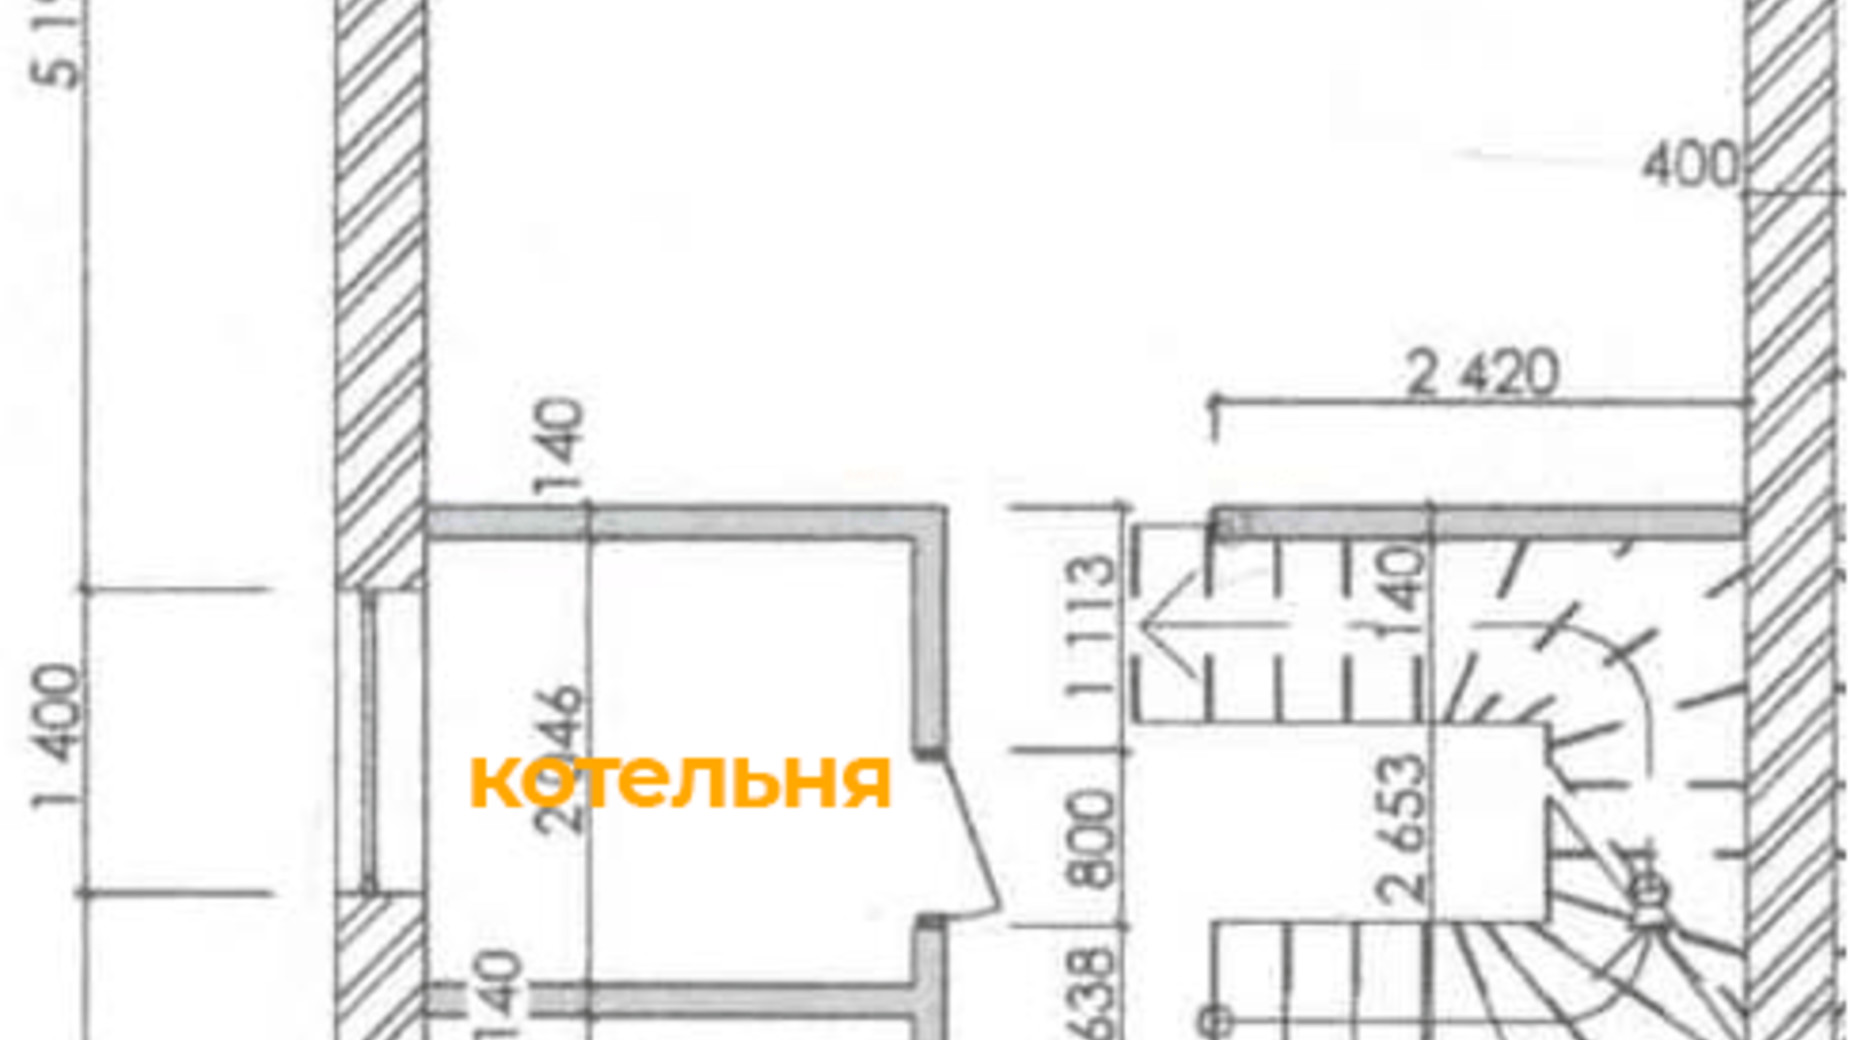 Планировка дуплекса в КК Михайловский 120 м², фото 594176